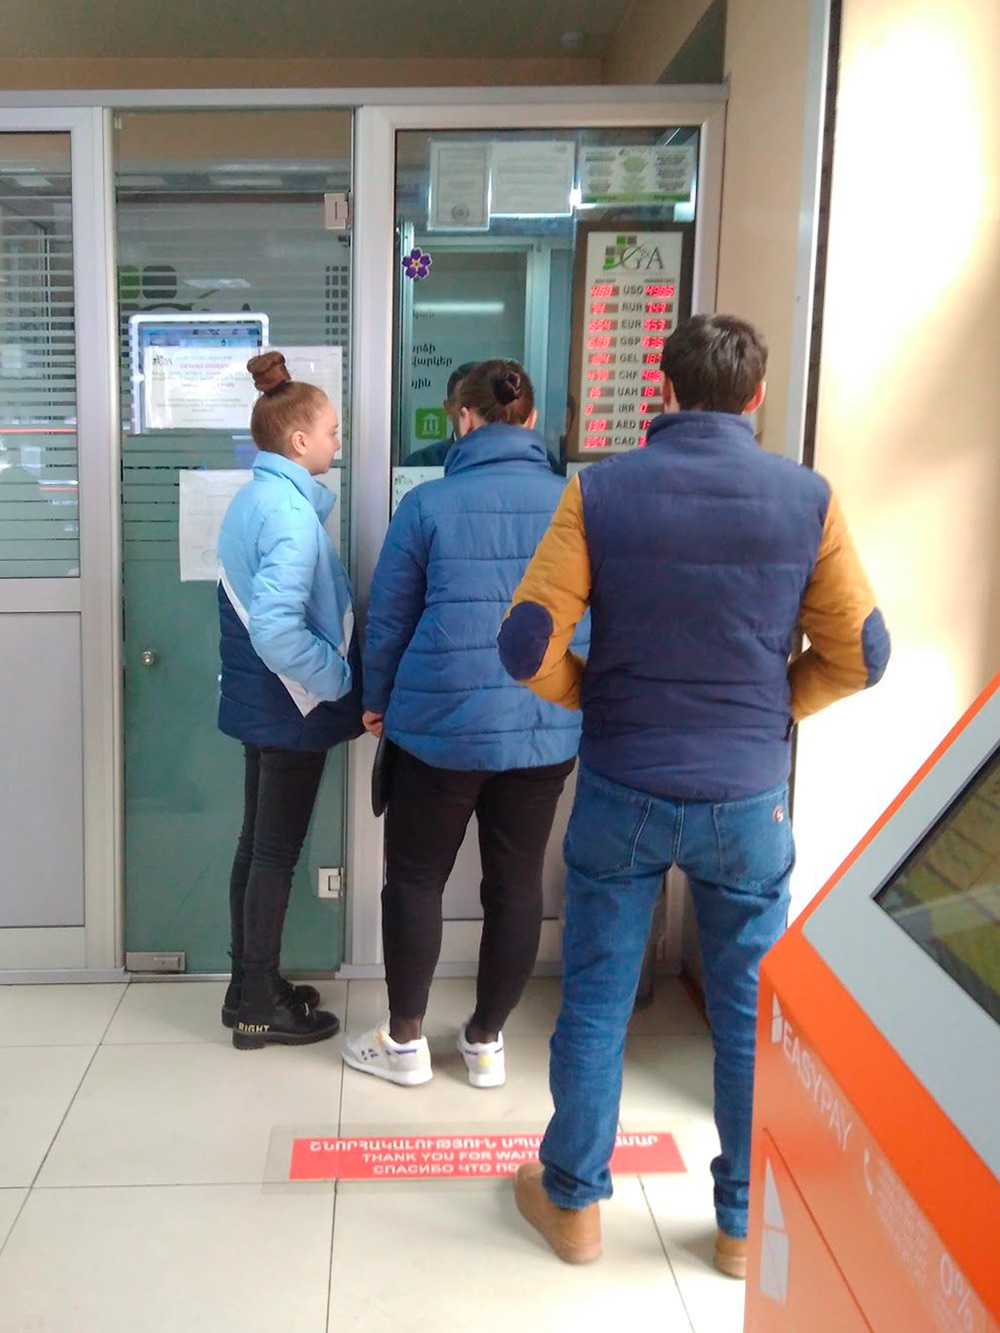 Обменники в Ереване можно найти почти в каждом супермаркете на входе. Меняют рубли, лари, доллары, евро и другую валюту